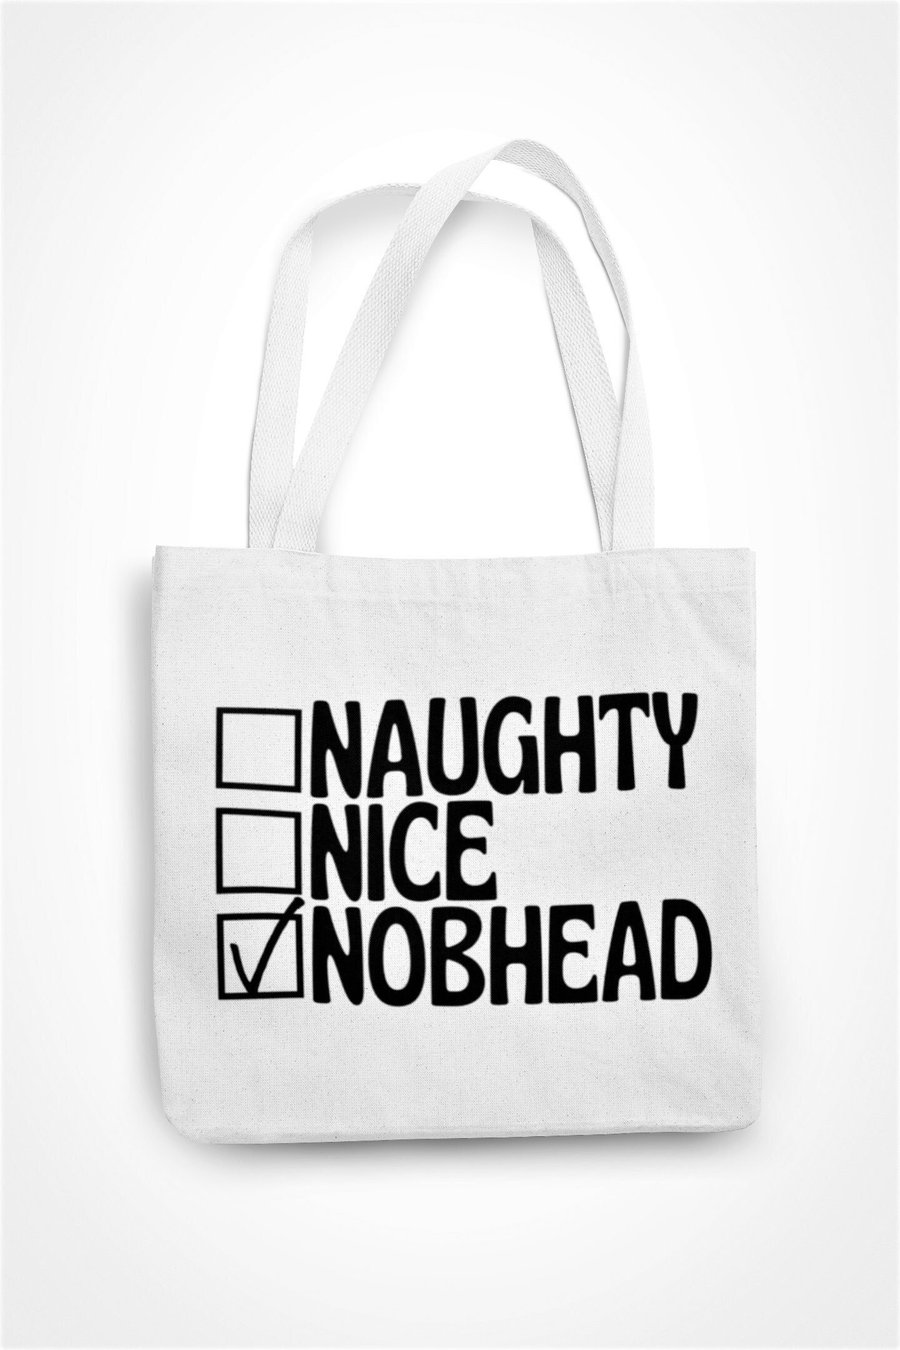 Naughty Nice Nob head Tote Bag Christmas Rude Funny Novelty Eco Shopping Bag